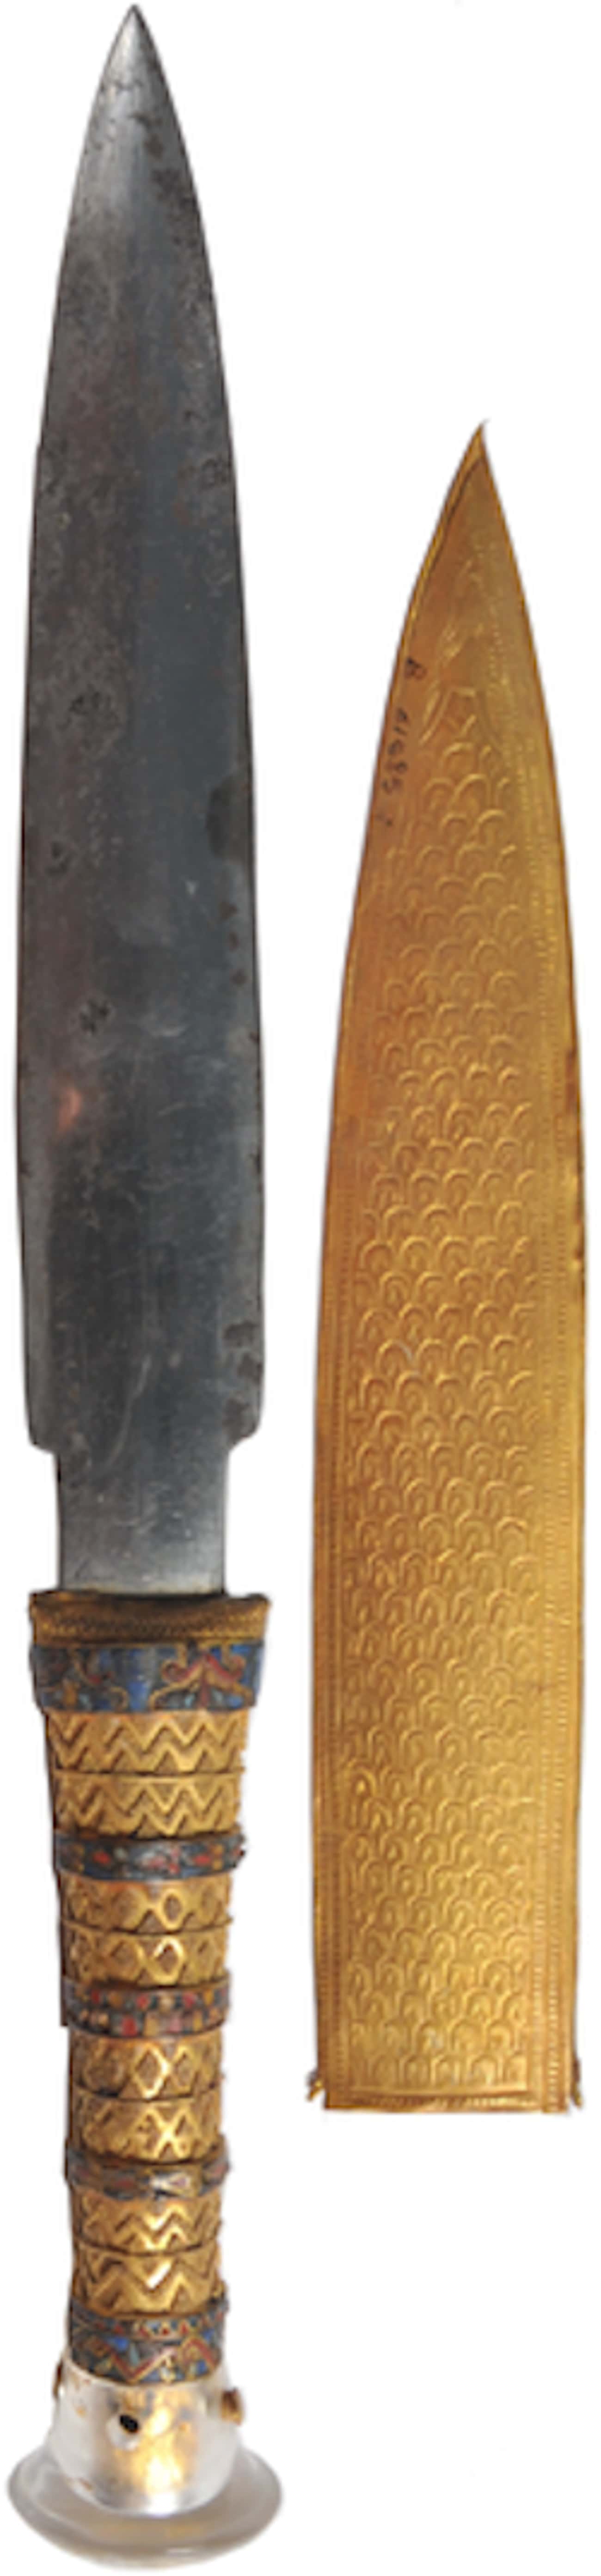 King Tut's Meteorite Dagger (c. 14th Century BC)